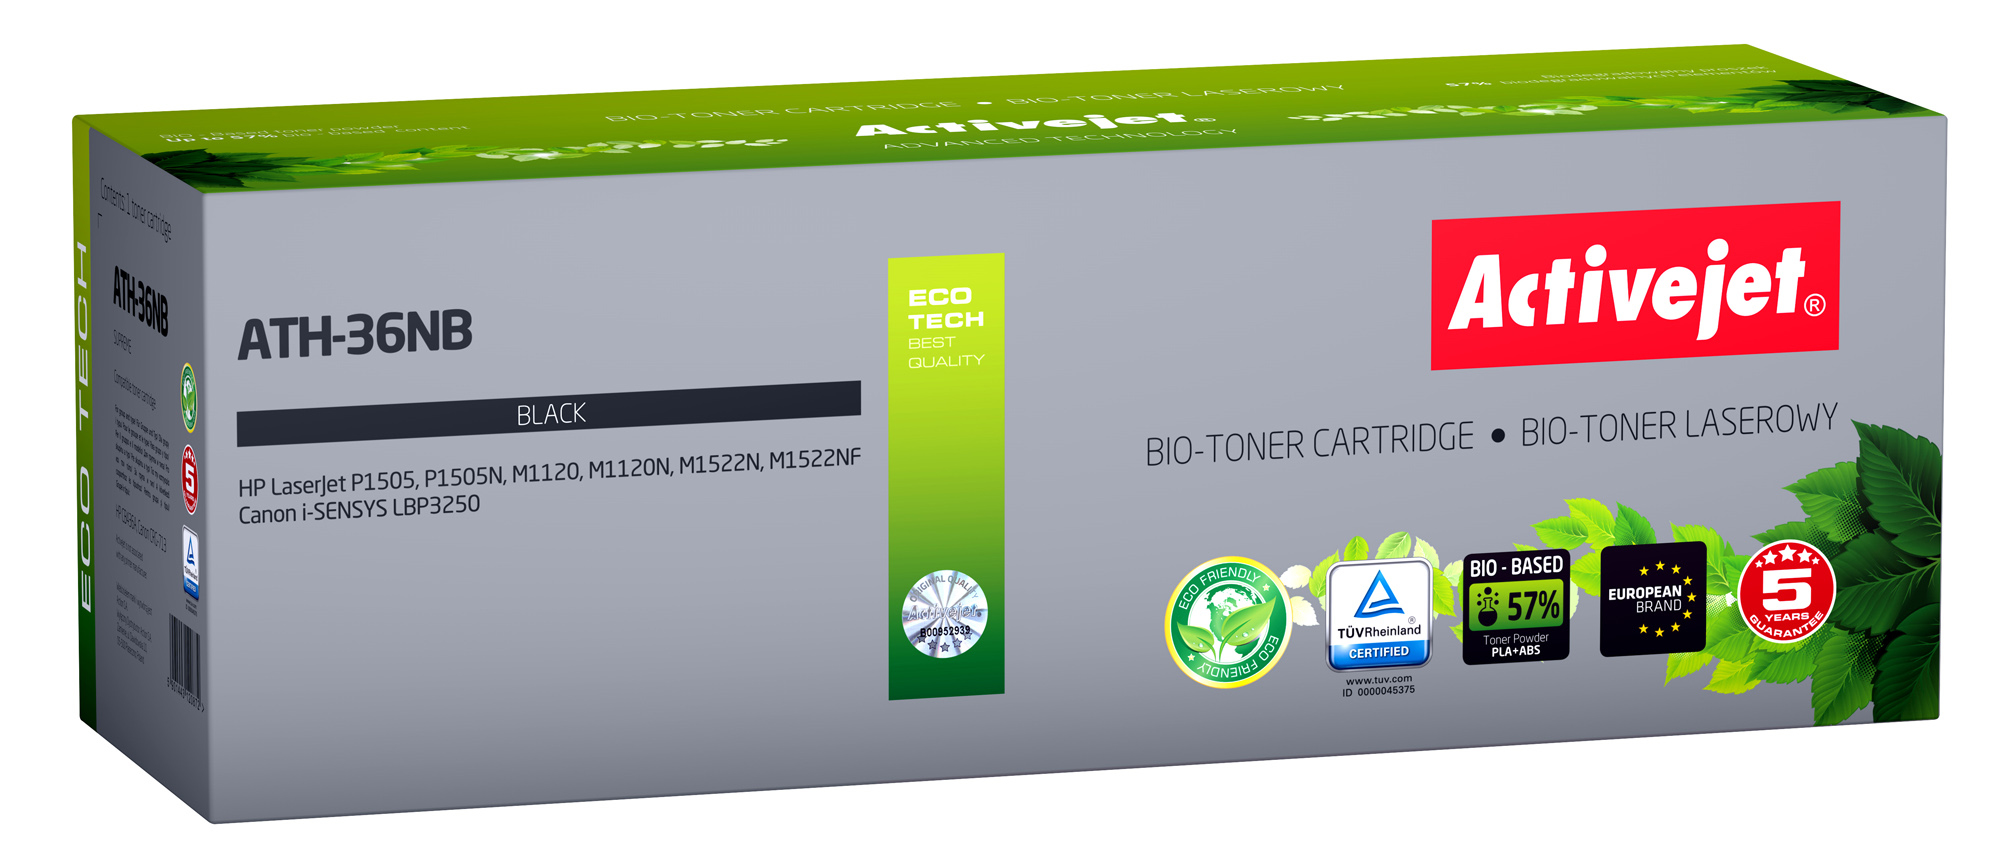 BIO Toner Activejet ATH-36NB do drukarek HP, Canon, Zamiennik HP 36A CB436A, Canon CRG-713;  Supreme;  2000 stron;  czarny. ECO Toner.